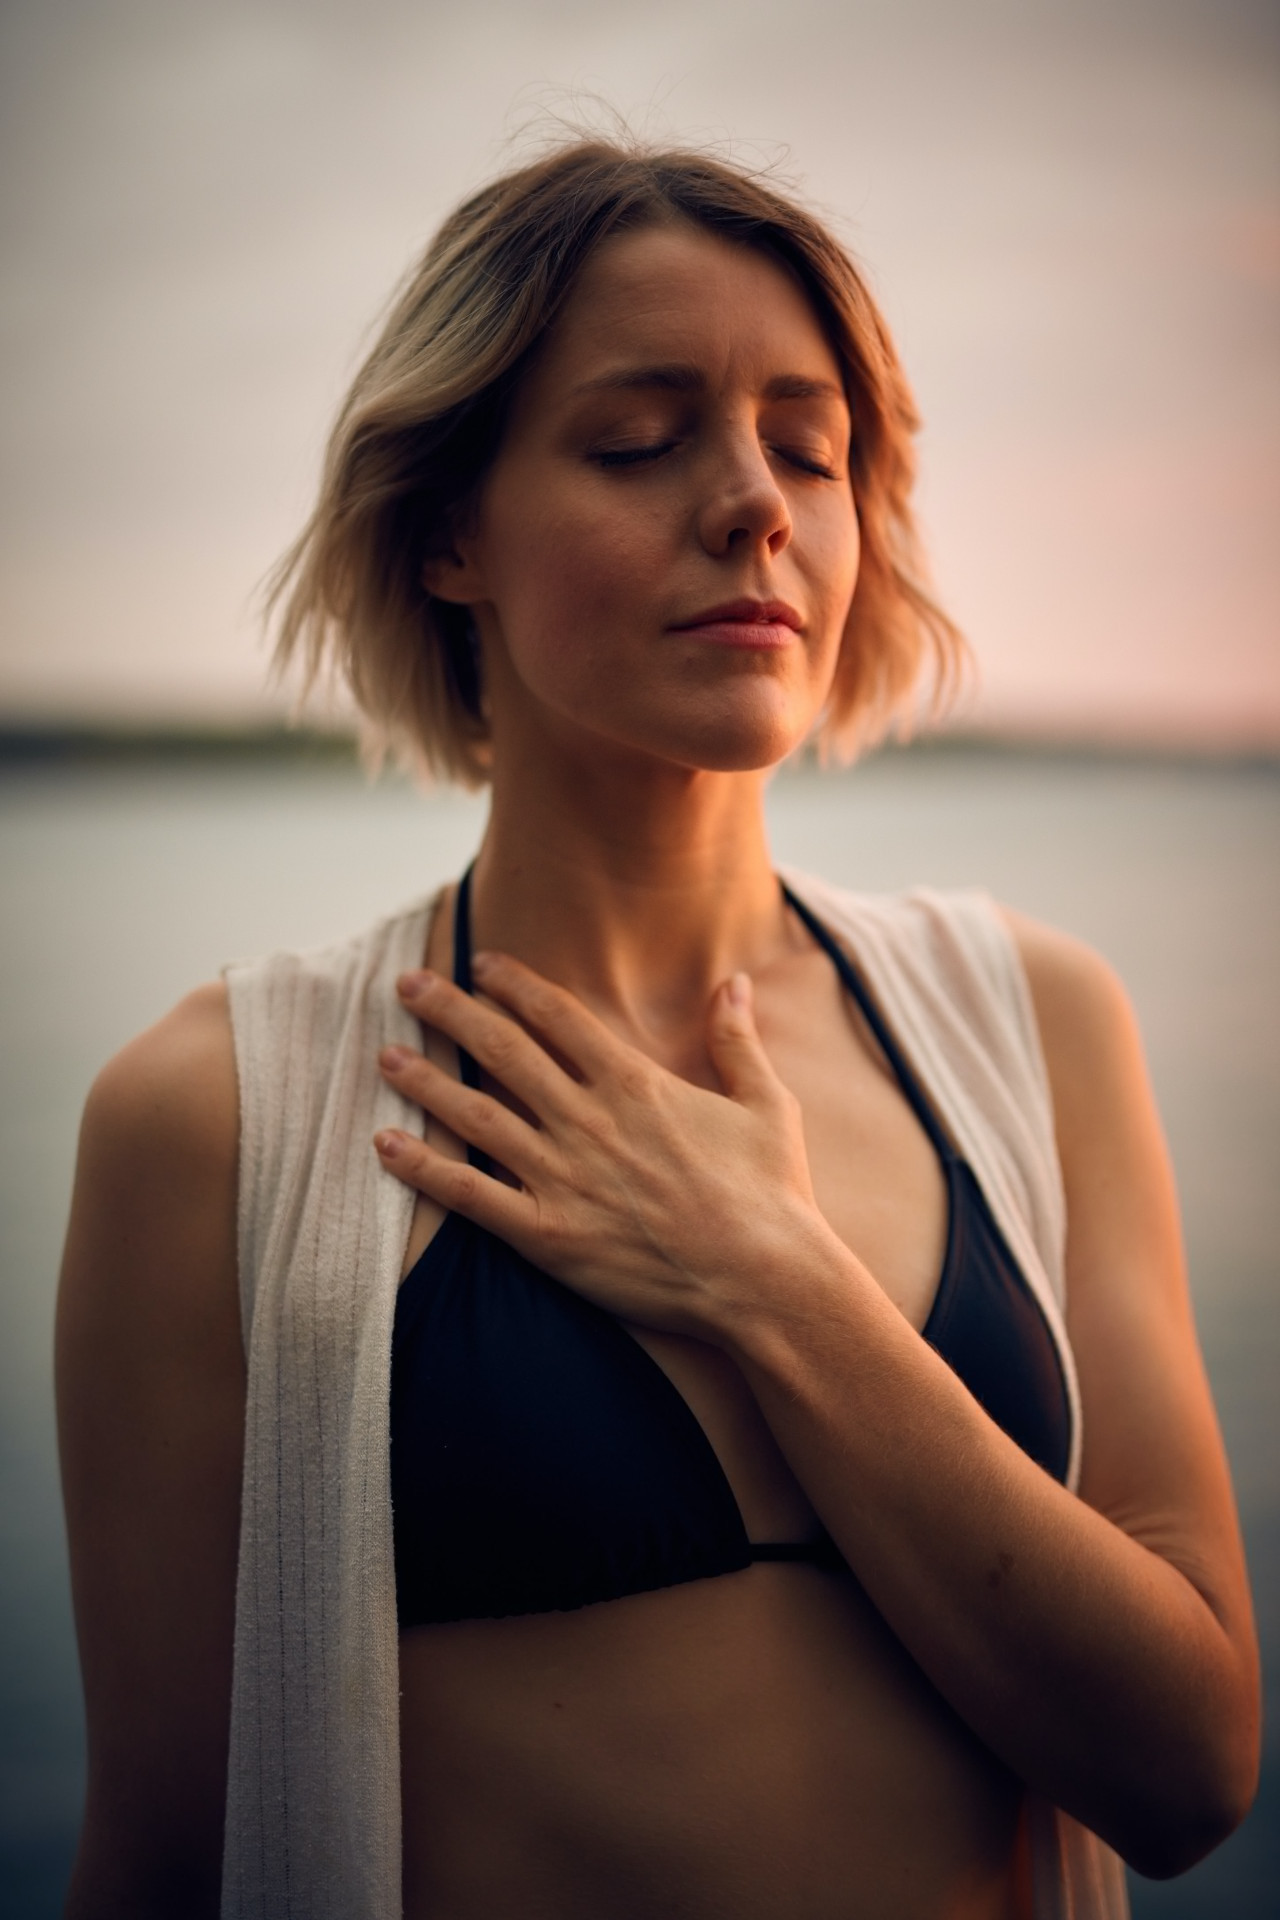 Una respiración controlada puede tener más beneficios que la meditación. Foto Unsplash.